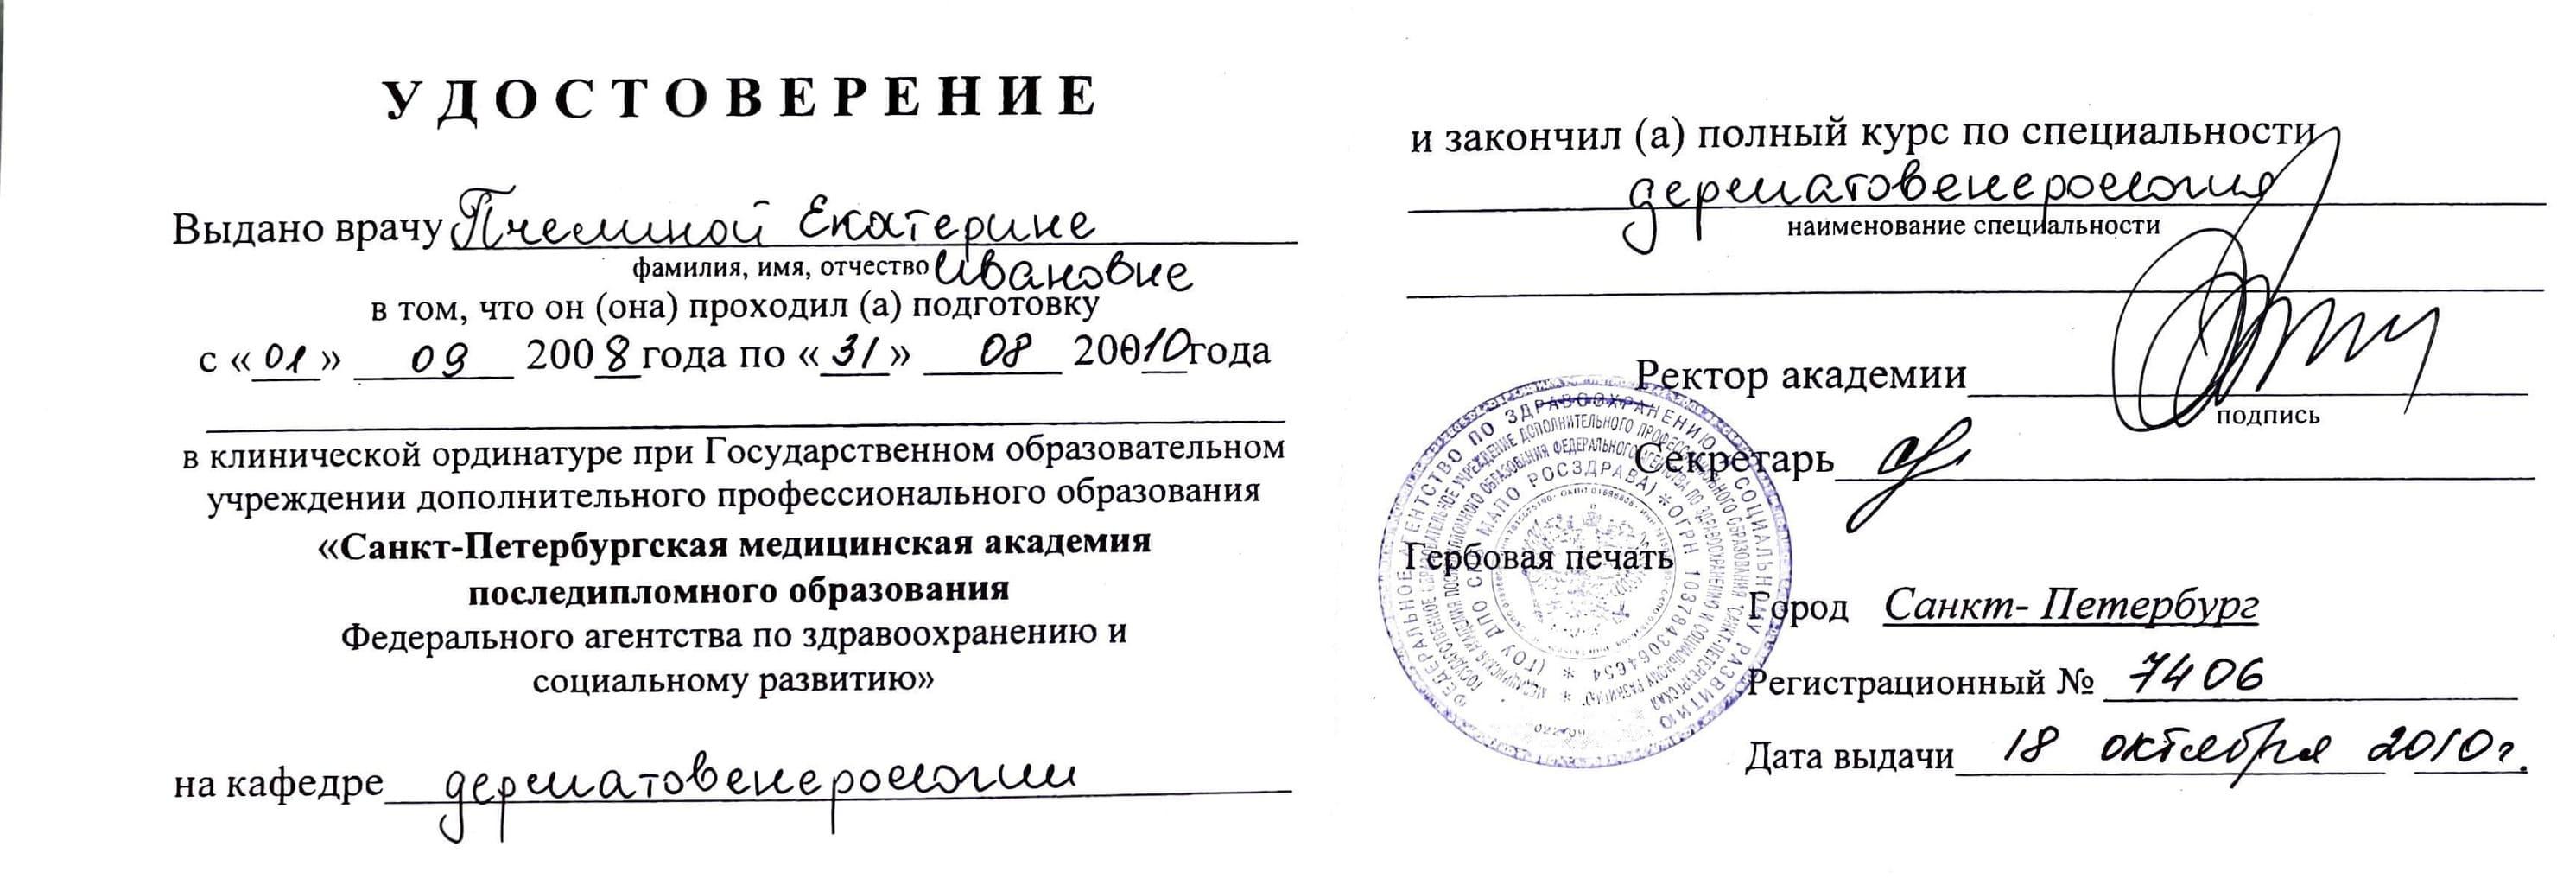 Документ подтверждающий что Екатерина Ивановна Пчелина получил(а) удостоверение профильного образования по специальности дерматовенерология